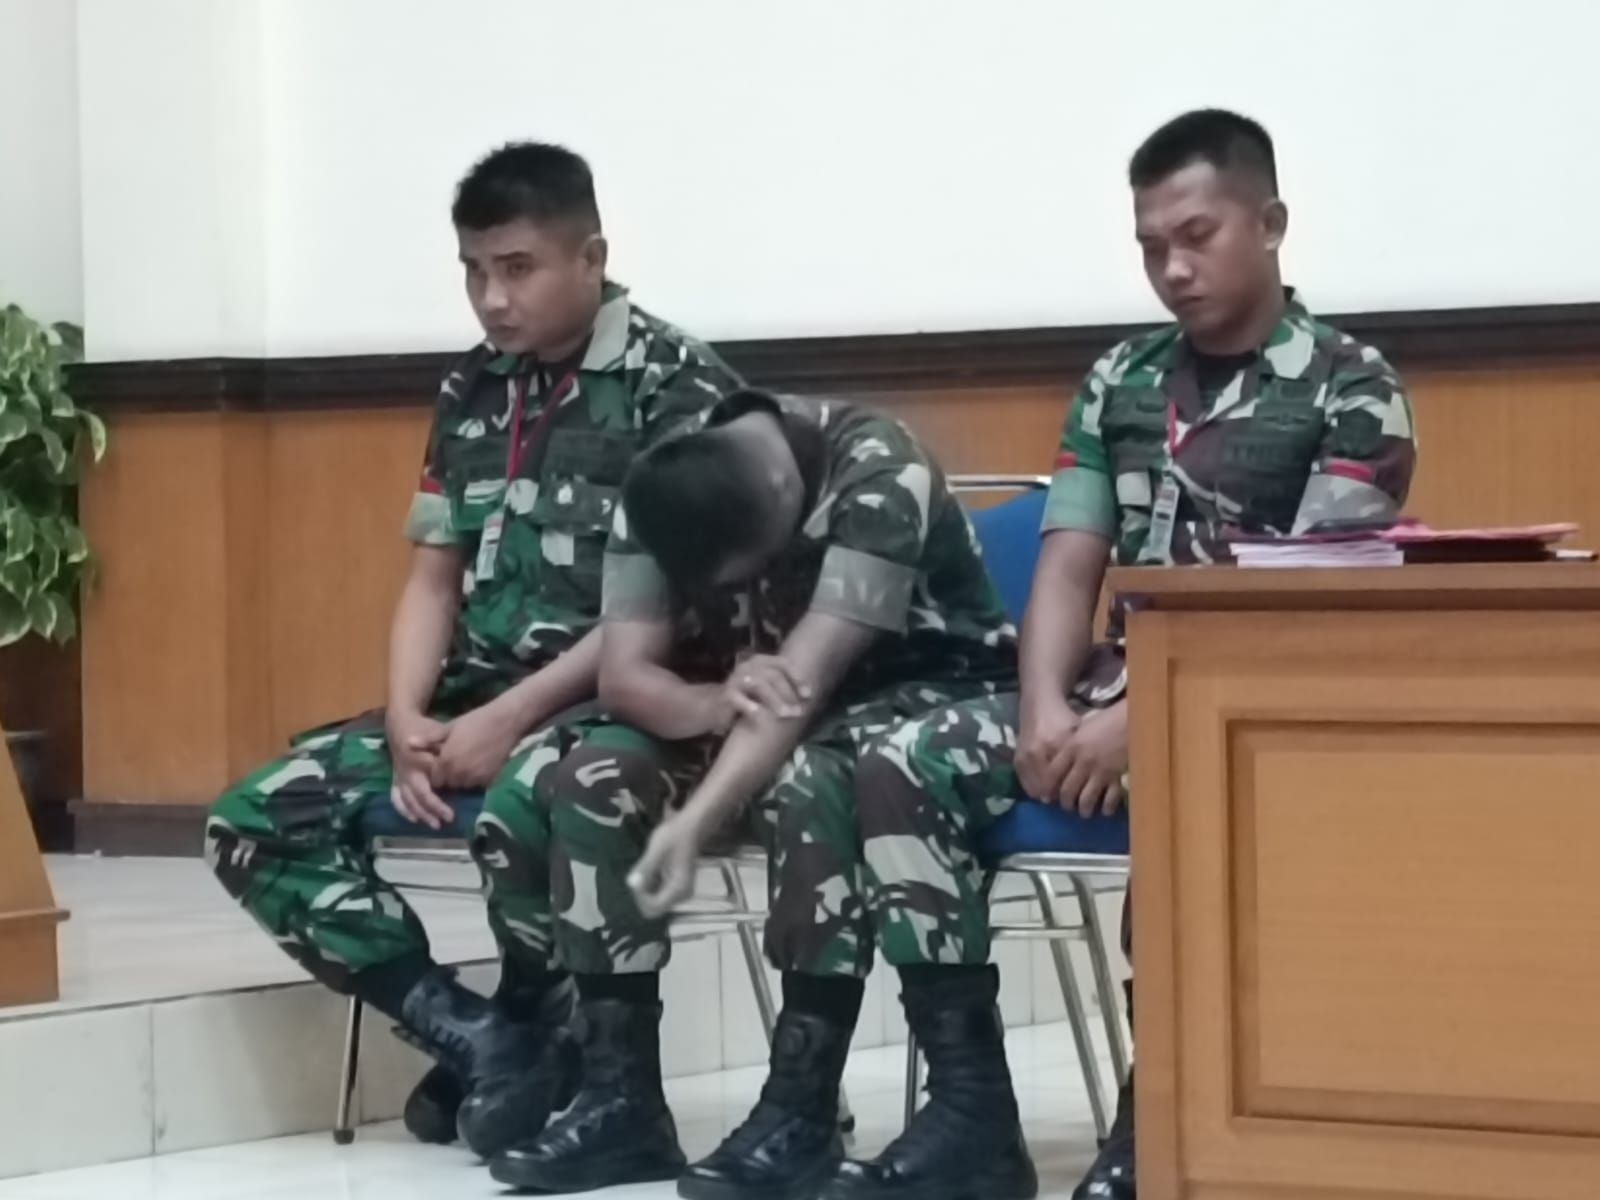 Divonis Penjara Seumur Hidup, 3 Oknum TNI Pembunuh Imam Masykur Diberi 3 Hak Tanggapi Putusan